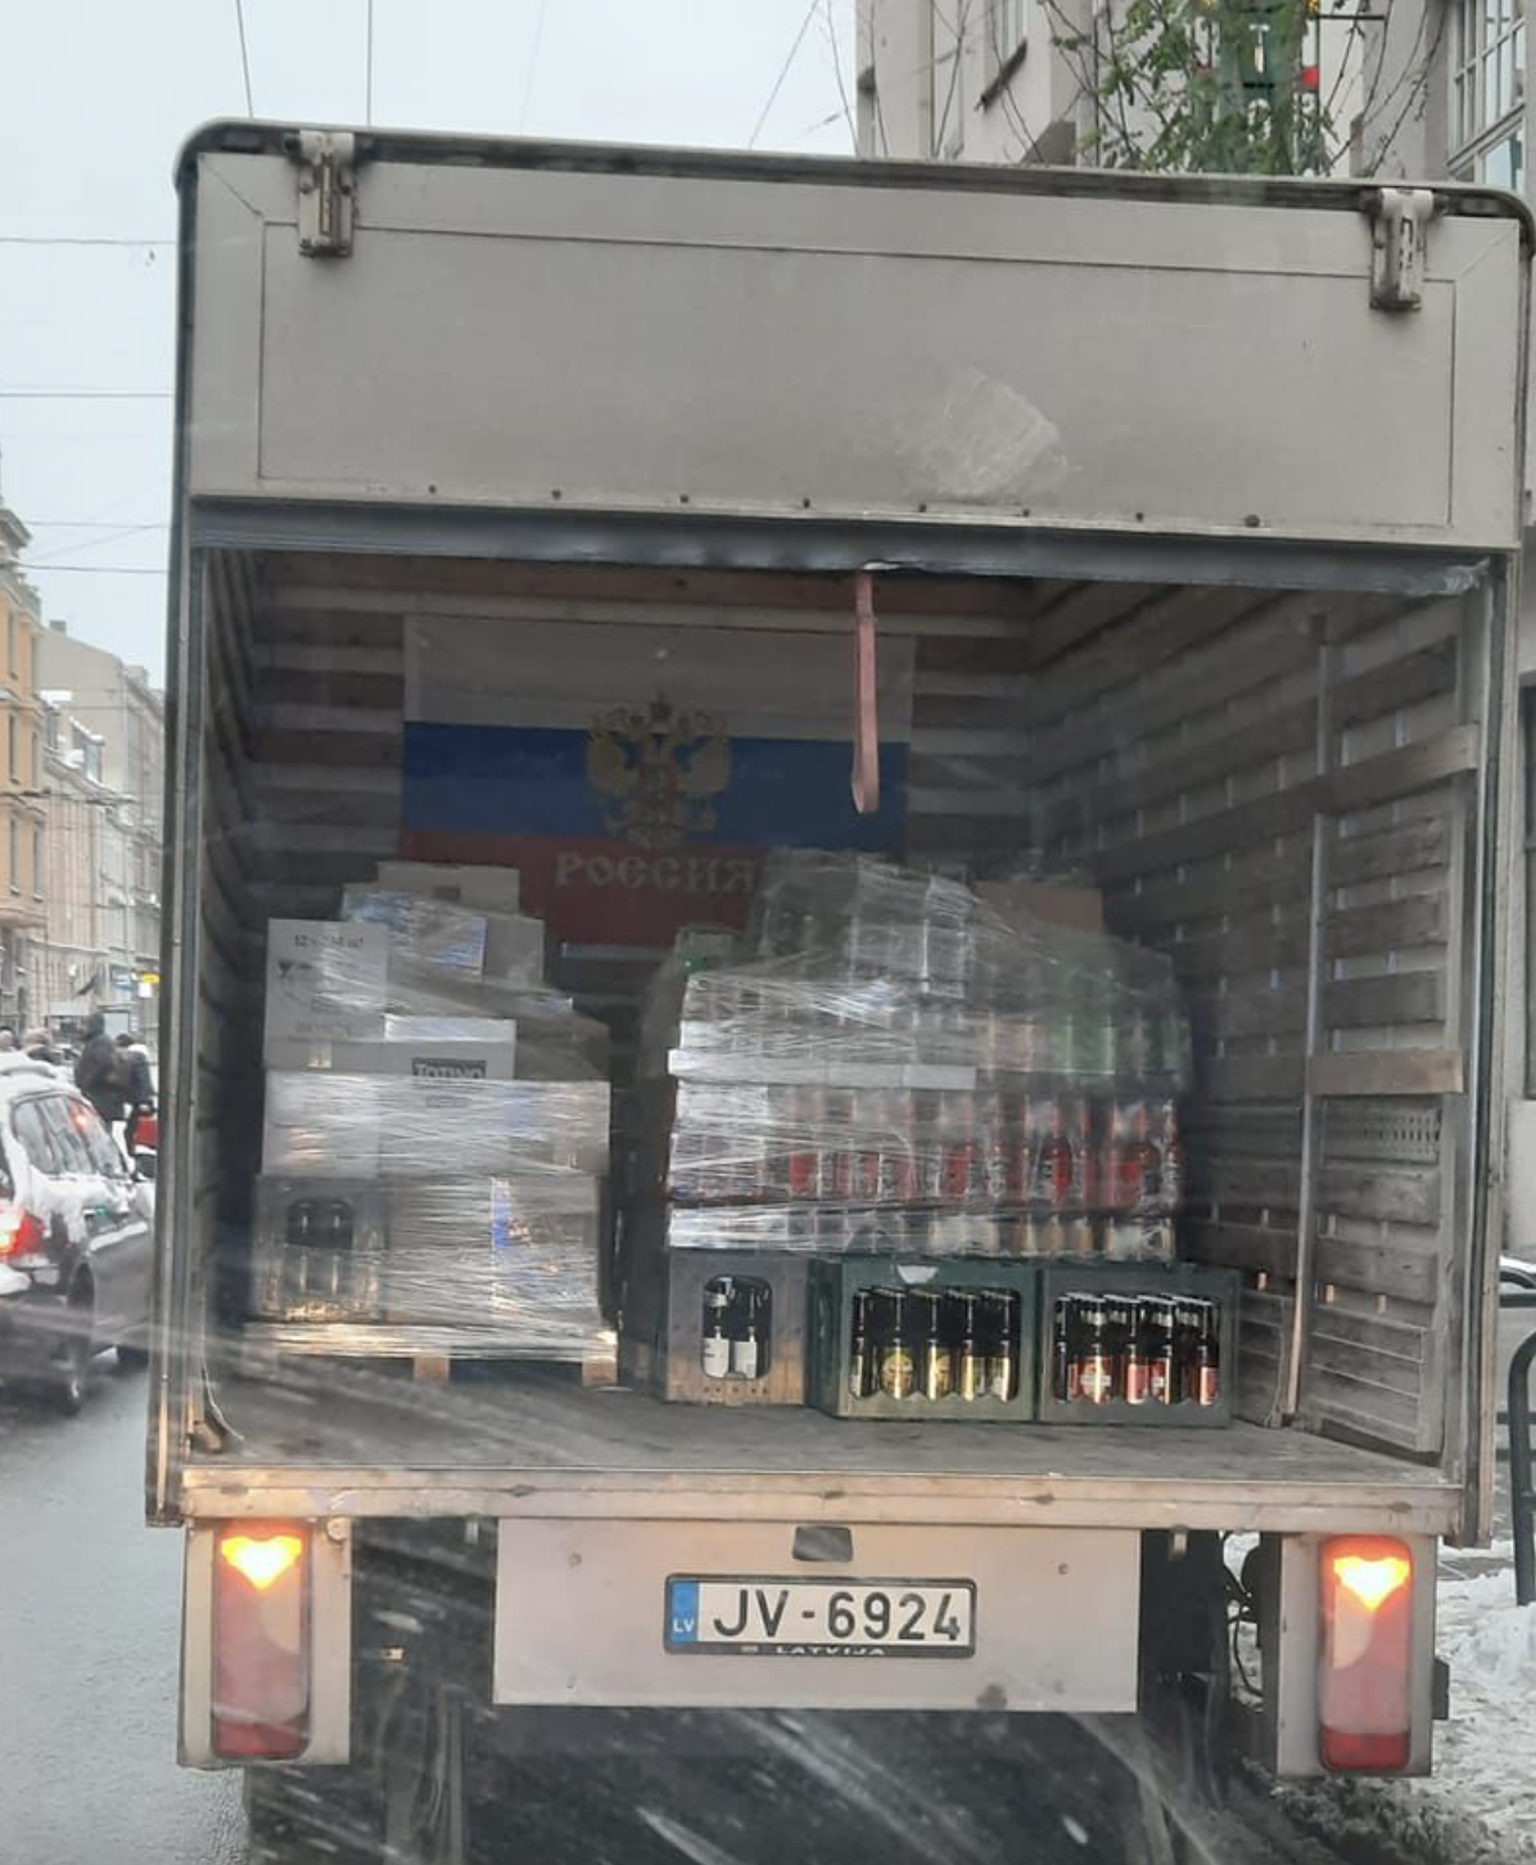 Грузовик с флагом России в грузовом отсеке